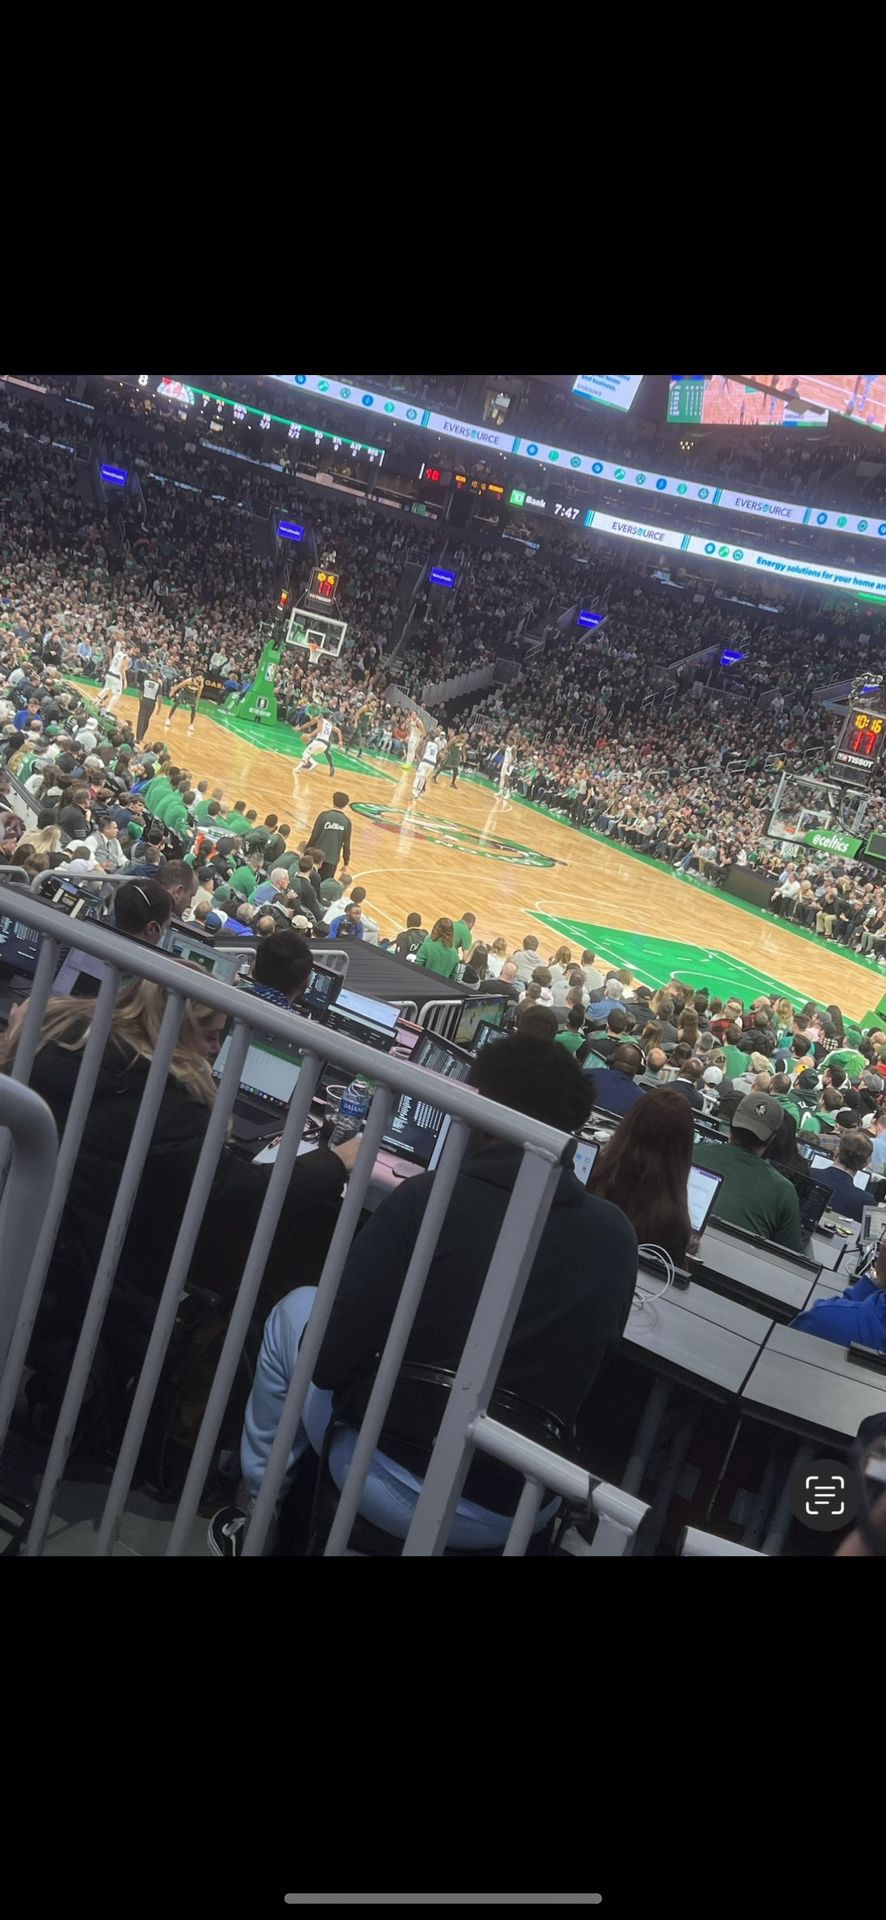 Celtics Playoffs round 1 